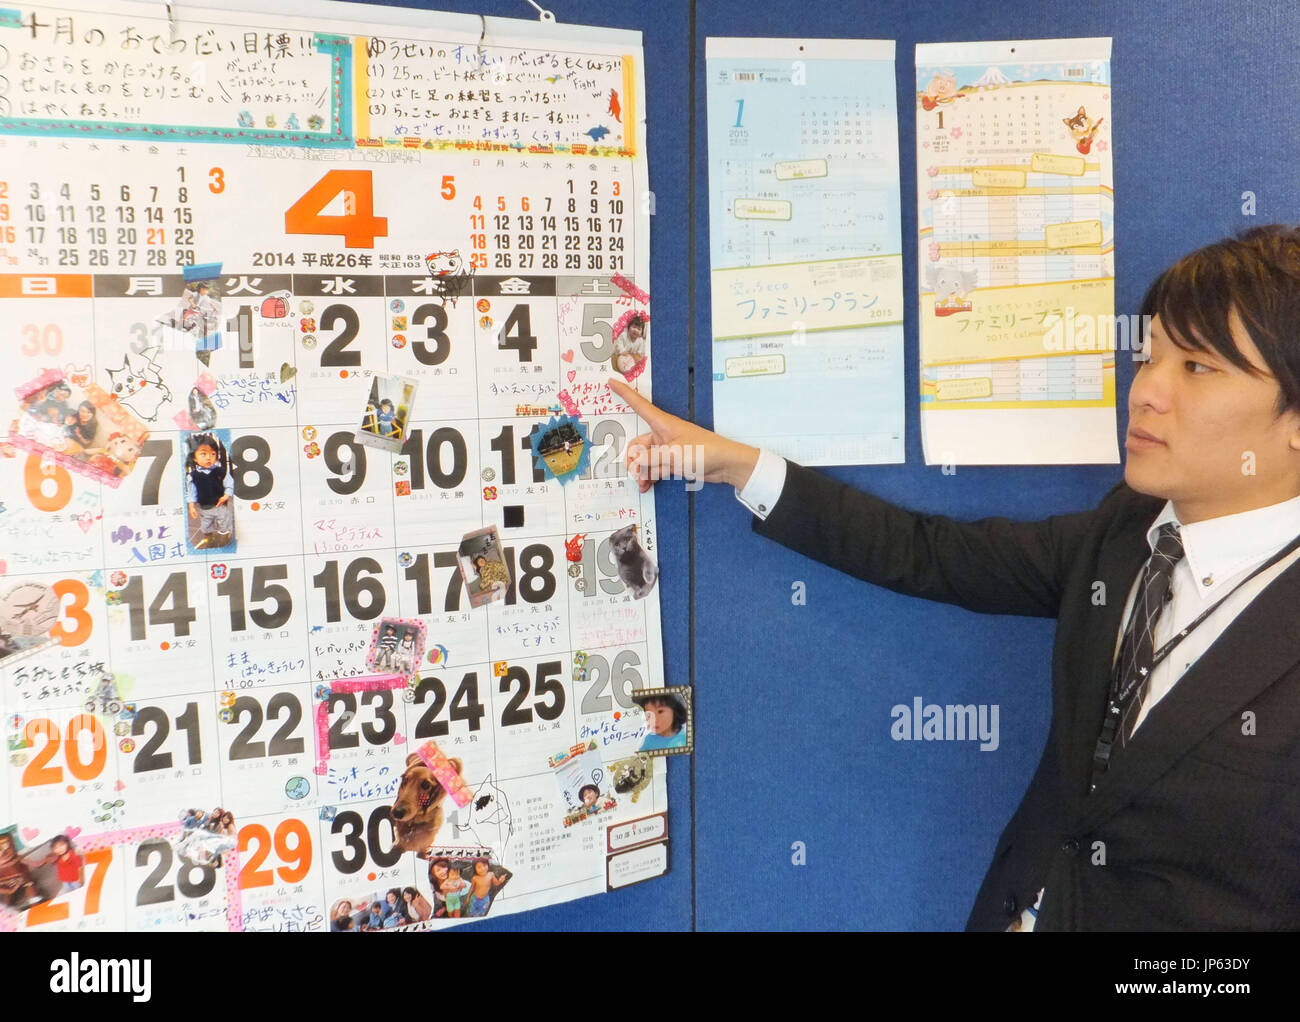 Tokio, Japón - un funcionario en Todan Co., un calendario maker en Tokio, desvela los diversos calendarios para 2015 El 19 de diciembre de 2014, incluyendo una gran uno fácilmente visible para personas con visión deficiente. (Kyodo) Foto de stock